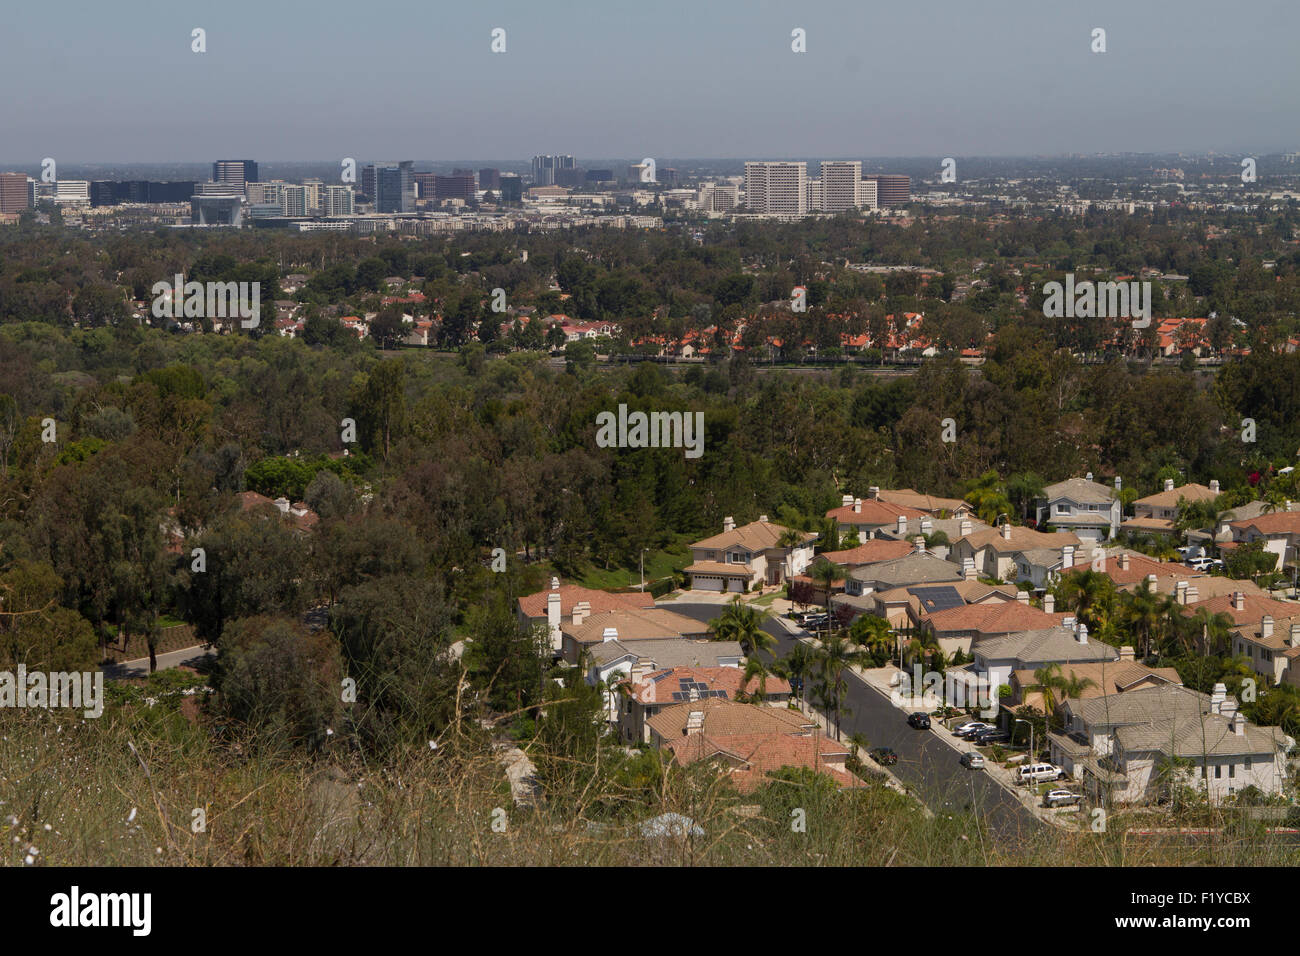 La ville d'Irvine en arrière-plan dans cette vue de l'Orange County Californie du Sud USA Banque D'Images